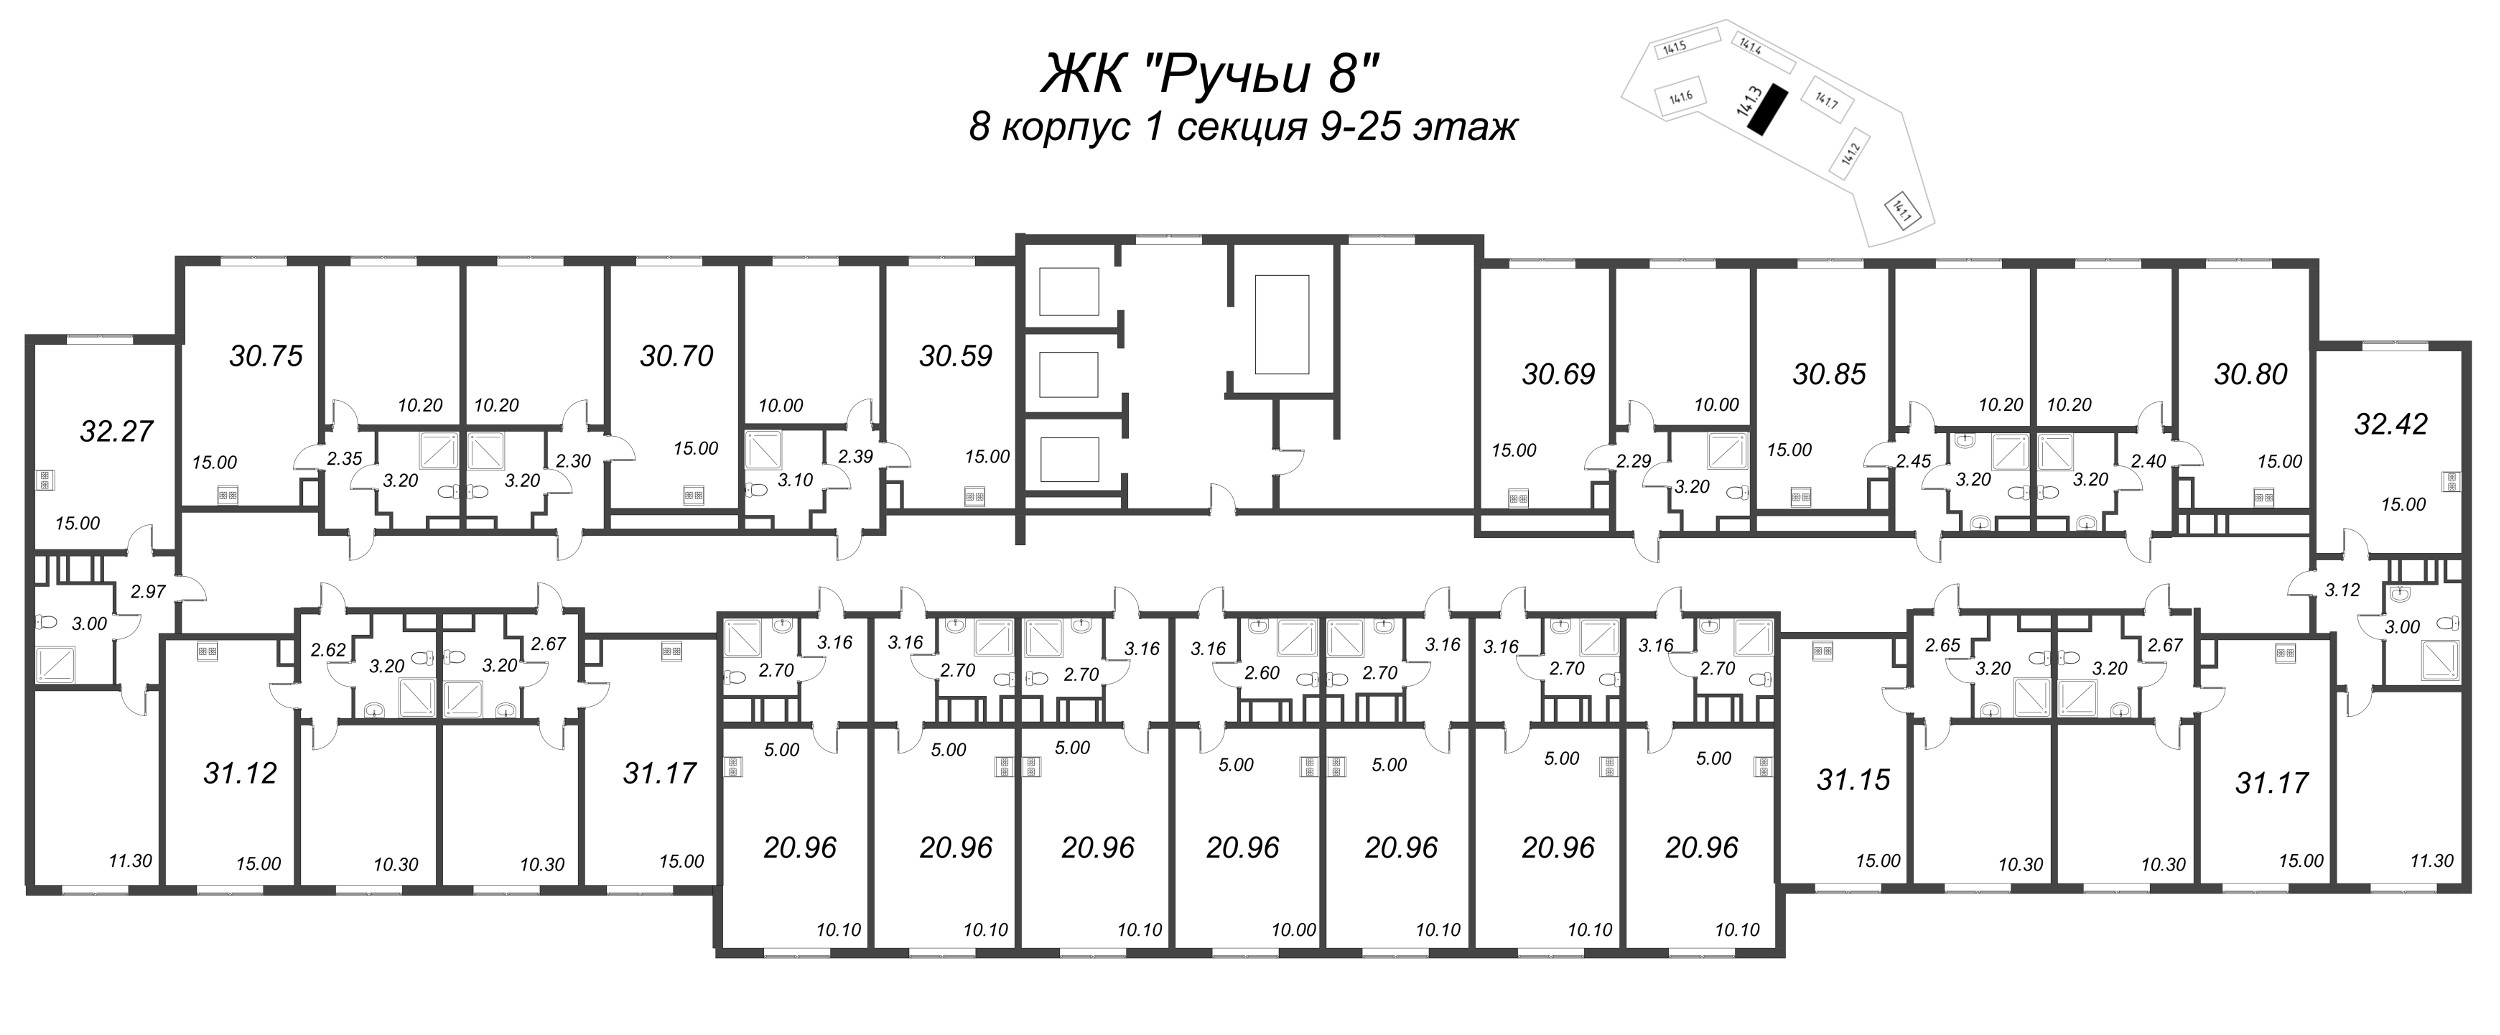 2-комнатная (Евро) квартира, 30.59 м² в ЖК "Ручьи" - планировка этажа